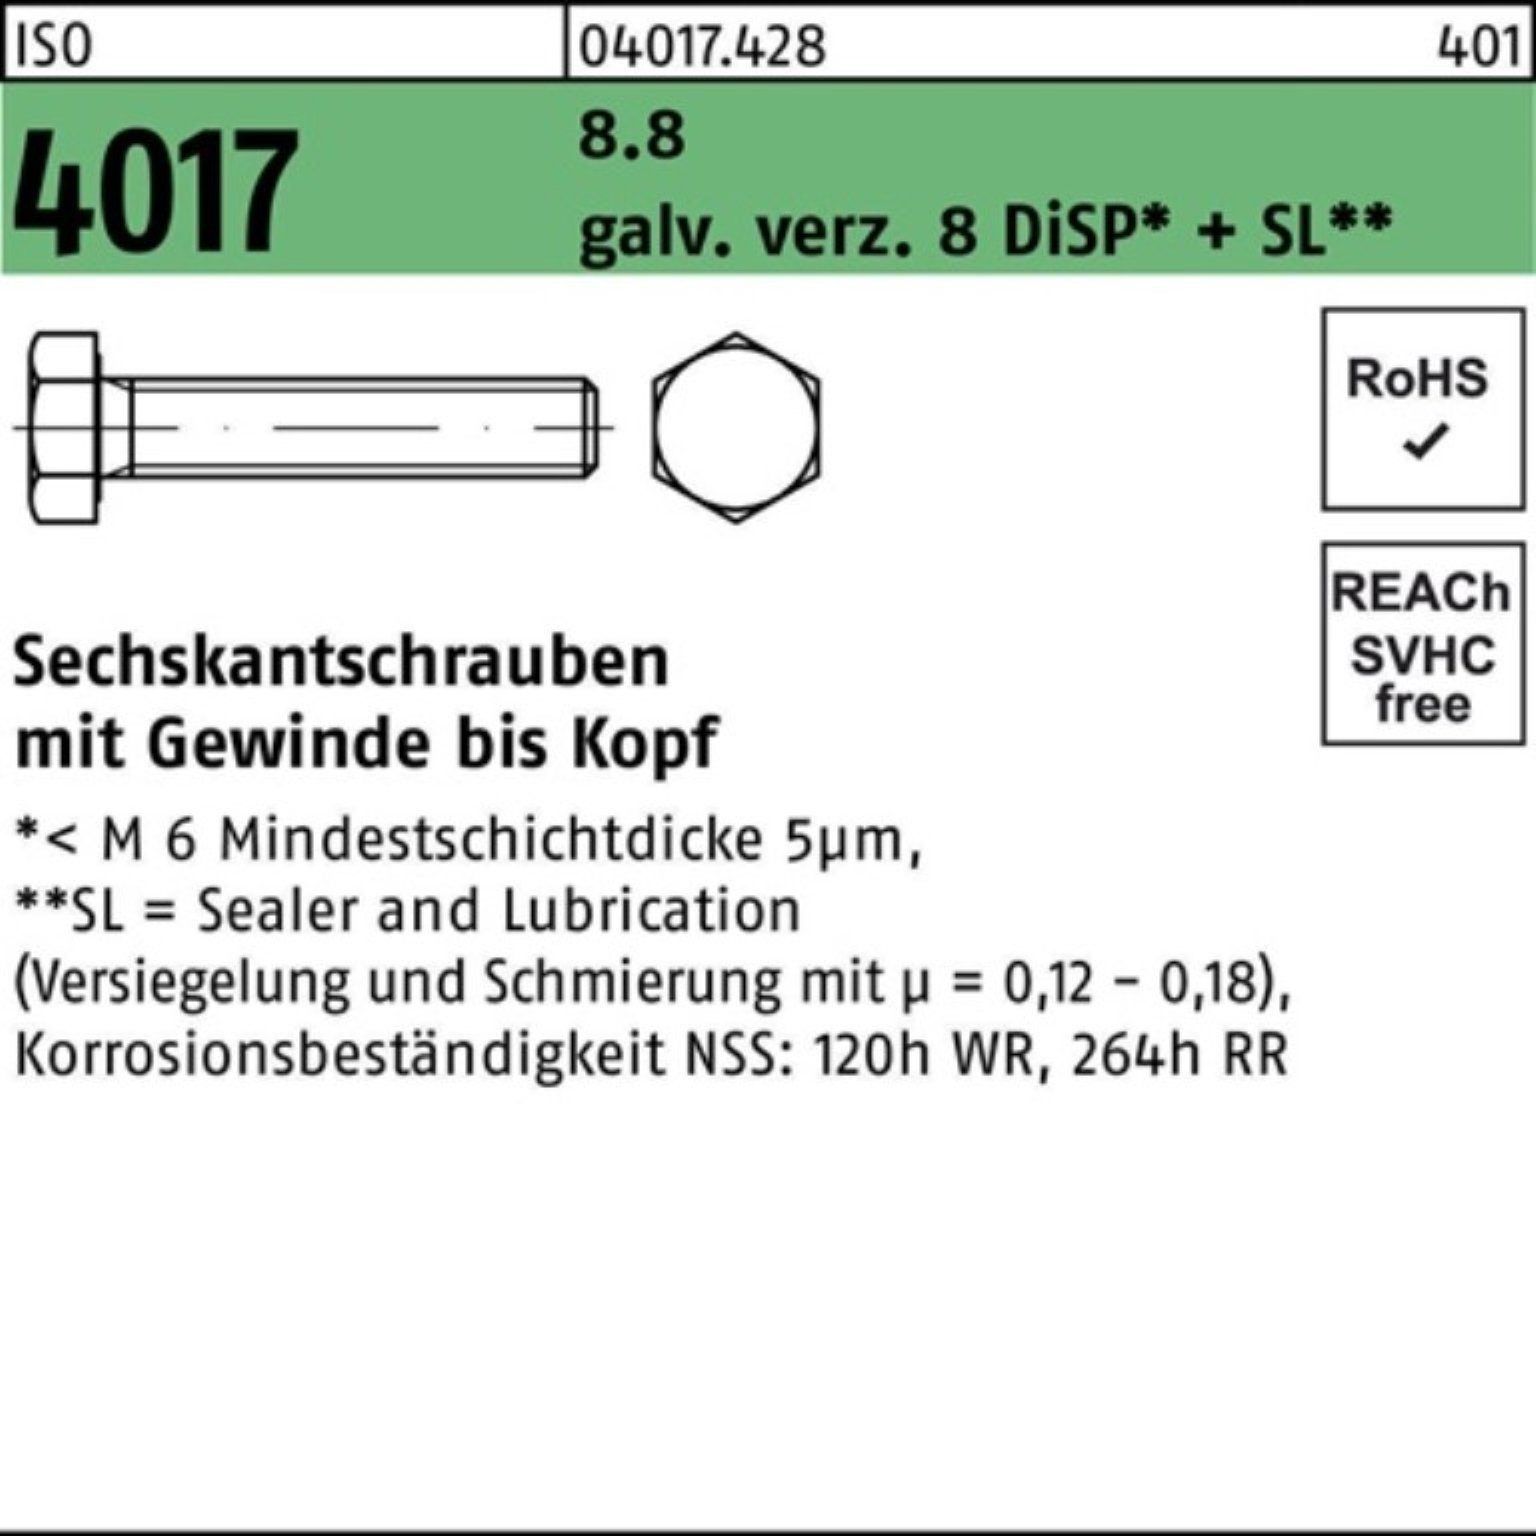 8 Pack Sechskantschraube 4017 Bufab ISO DiSP 100er galv.verz. VG Sechskantschraube M20x 8.8 65